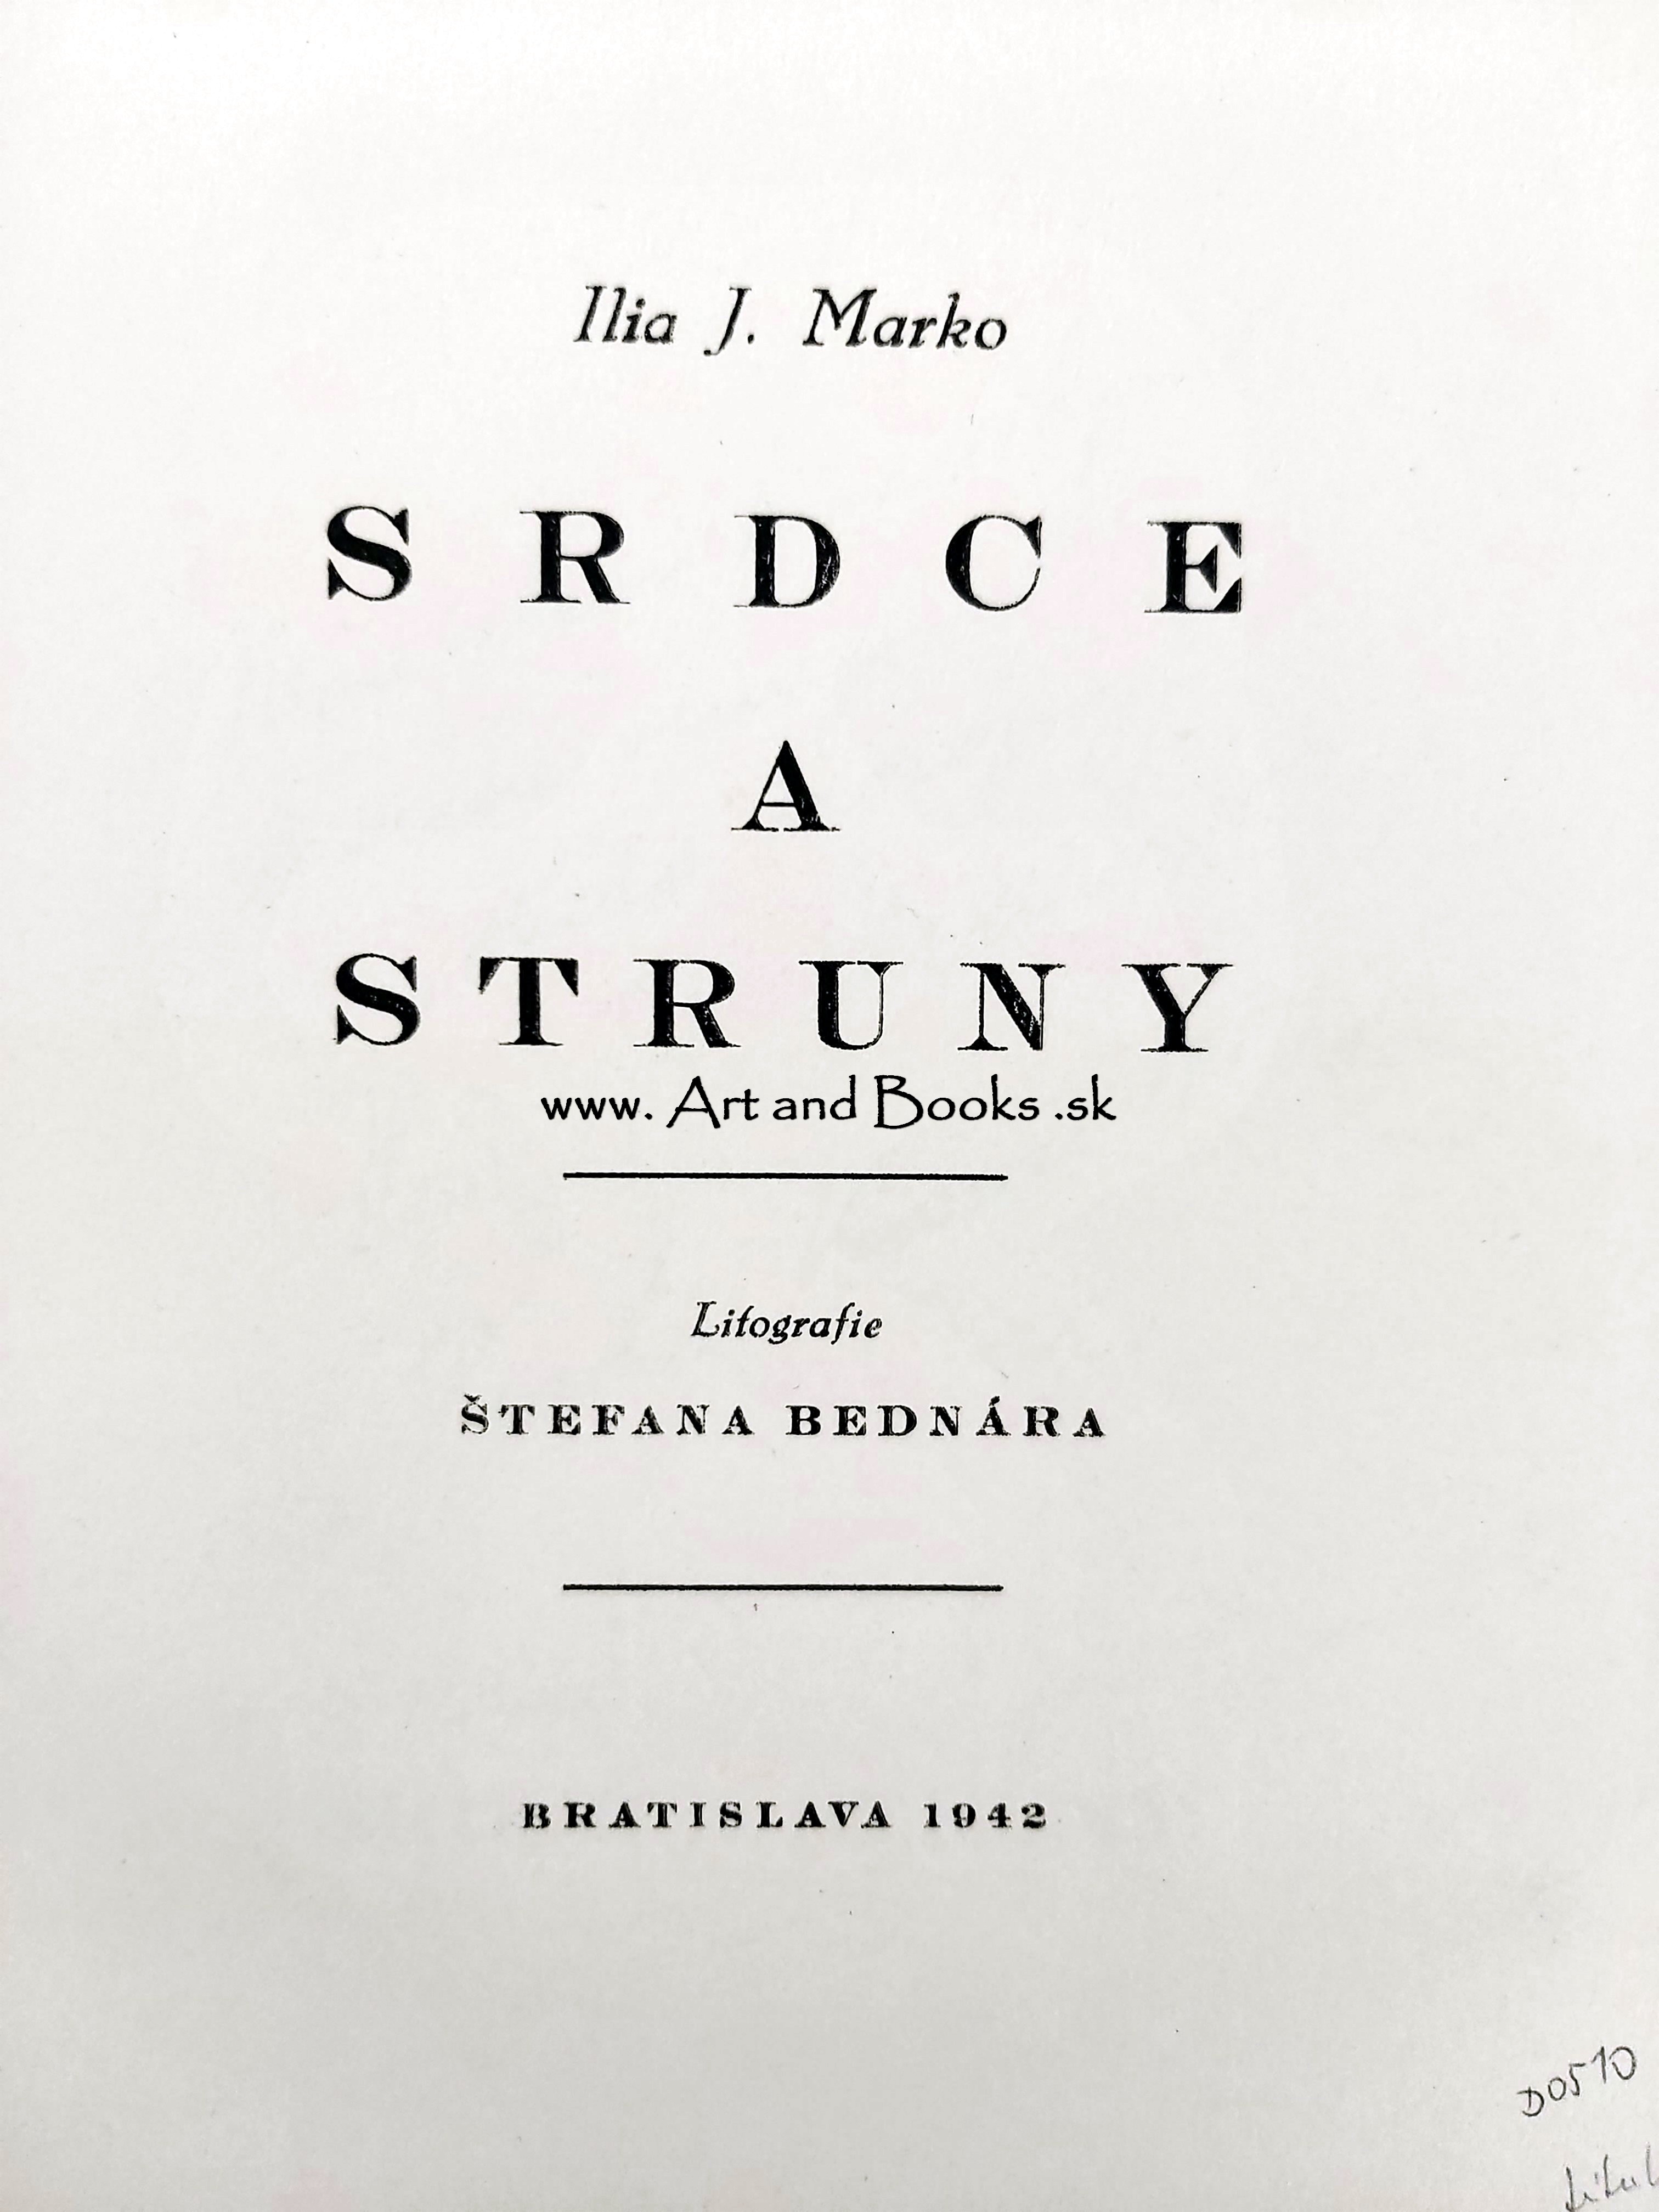 Ilia J. Marko - Srdce a struny (1942)	 ● 133641